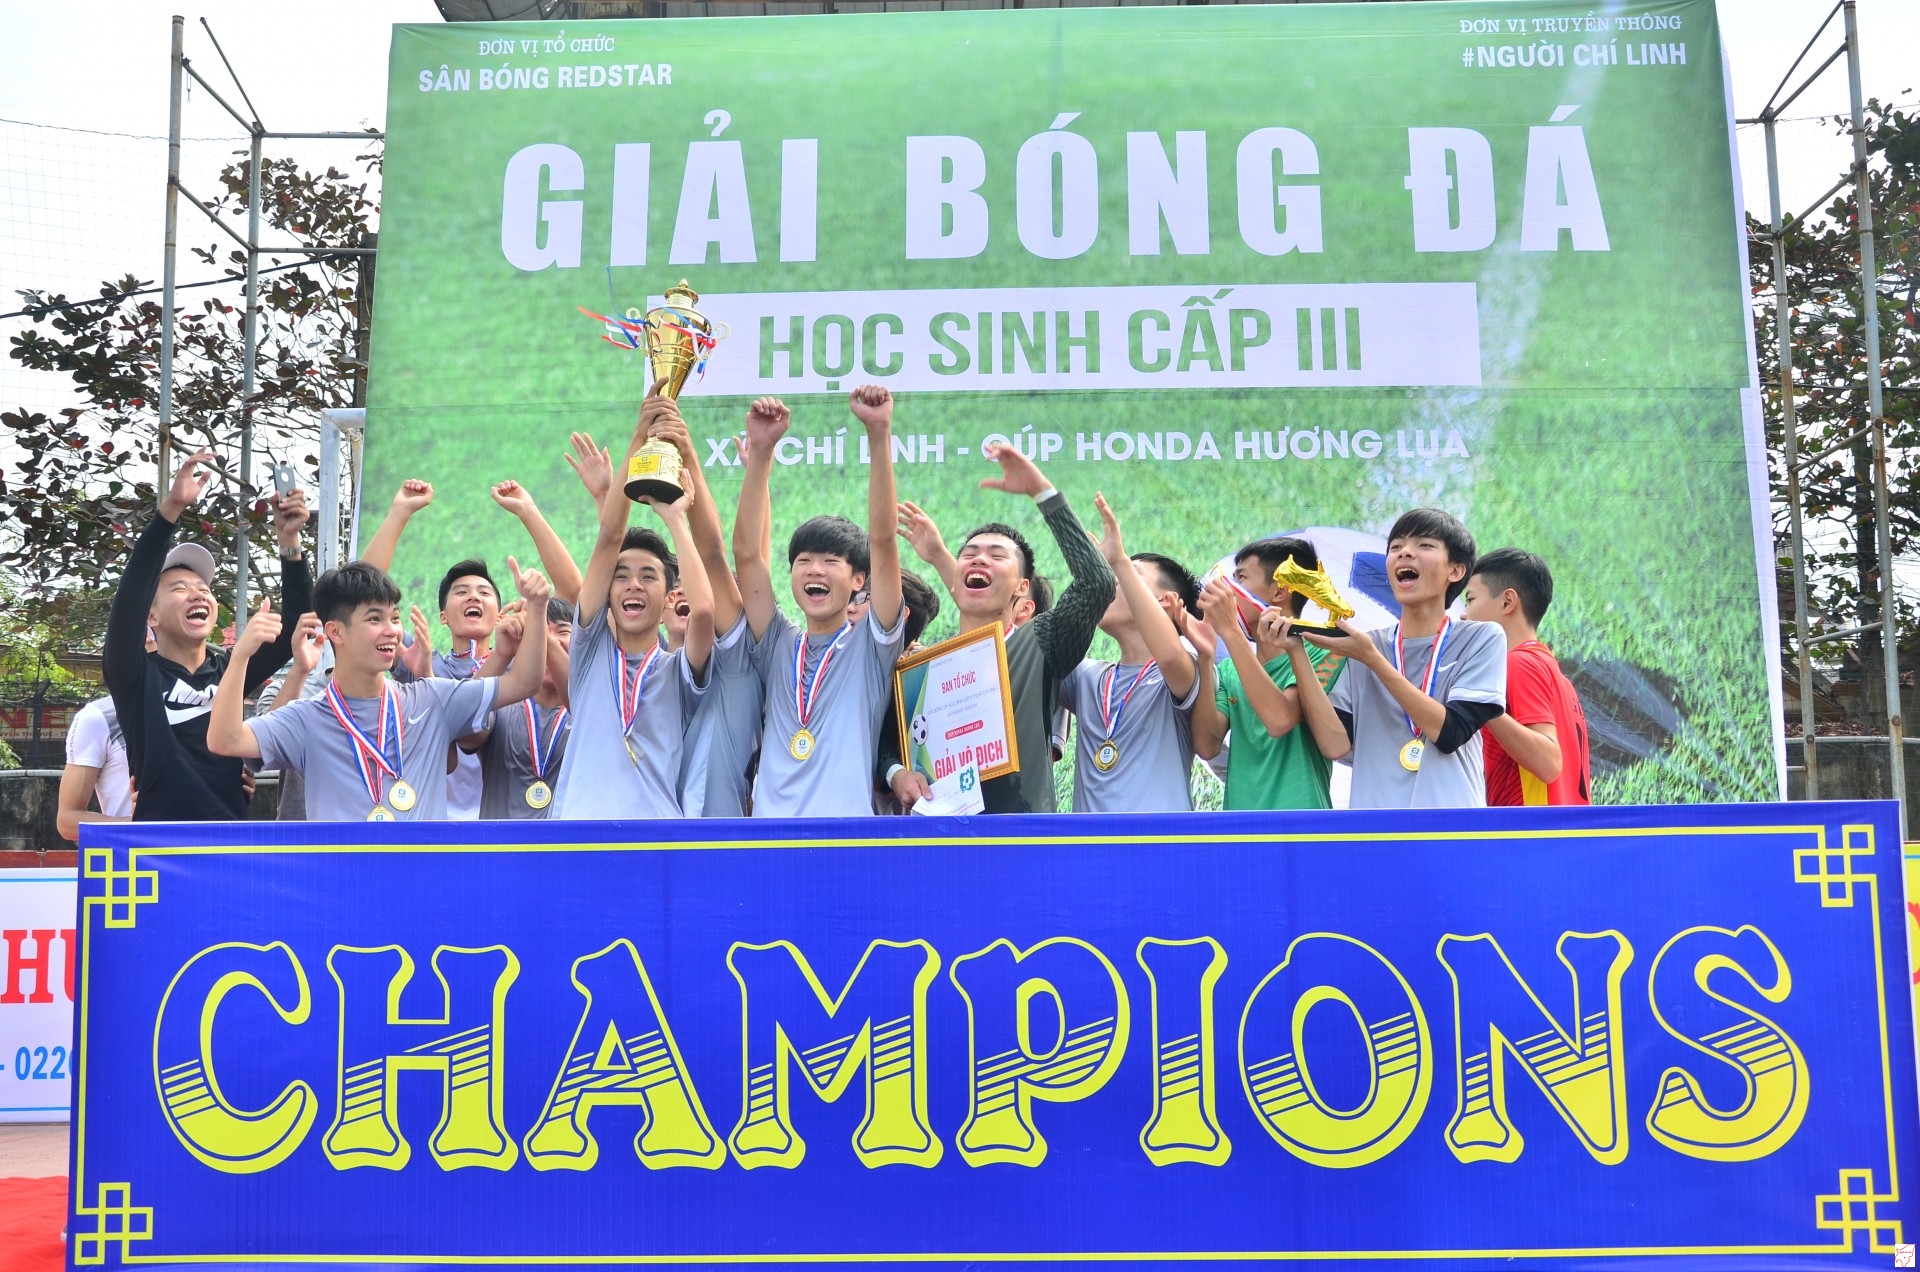 FC Ocean vô địch Giải bóng đá học sinh cấp III thị xã Chí Linh, cúp Honda Hương Lụa lần thứ nhất năm 2018